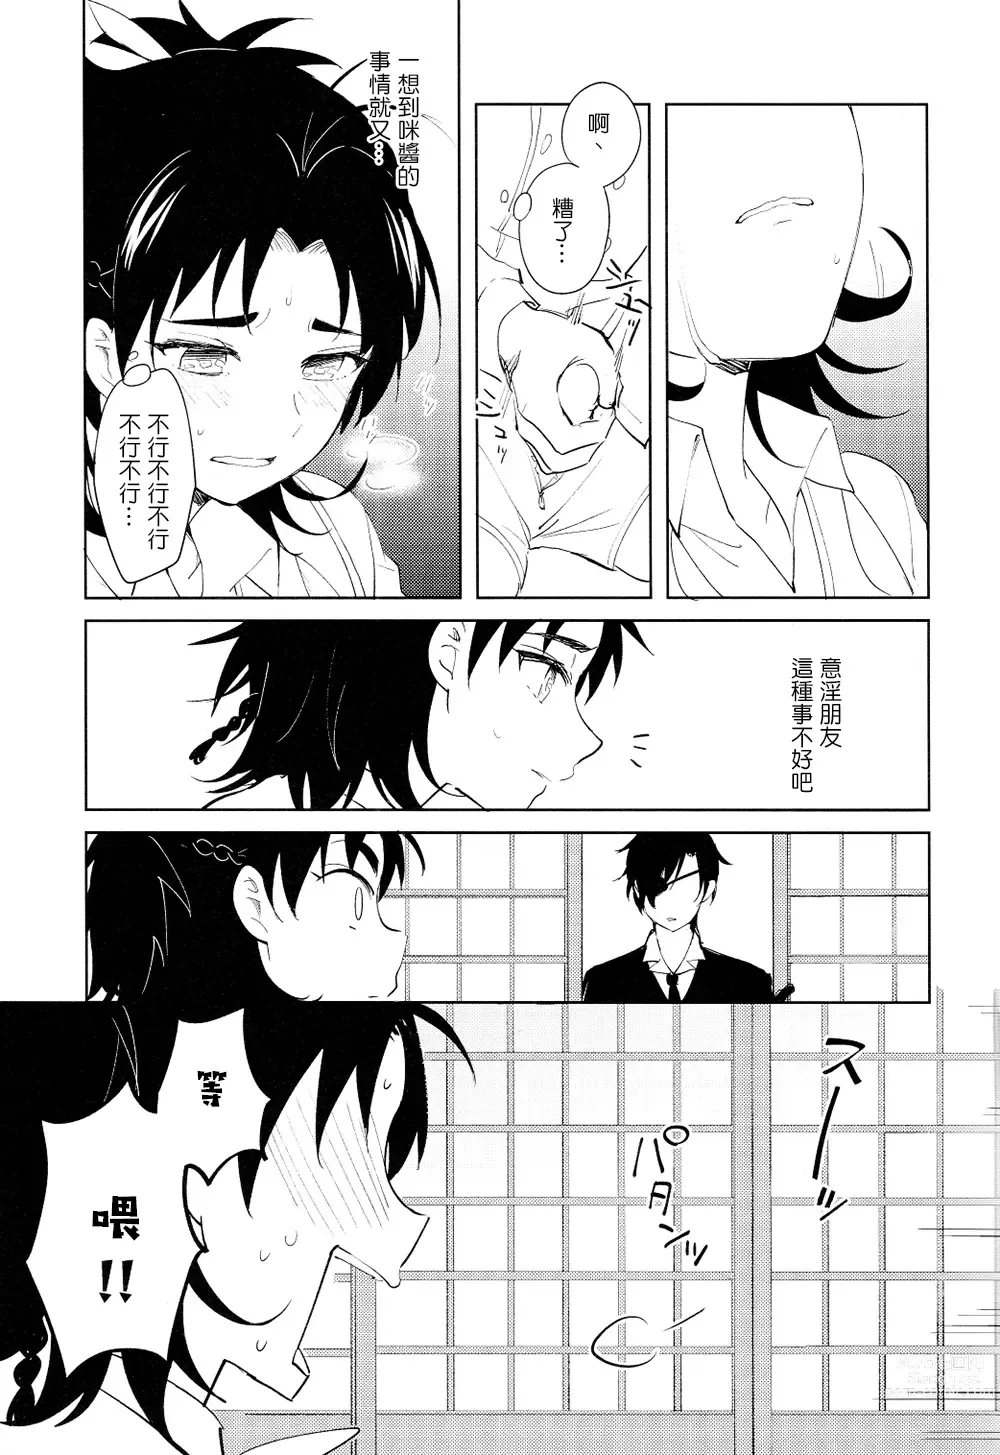 Page 4 of doujinshi 从一个人变成两个人